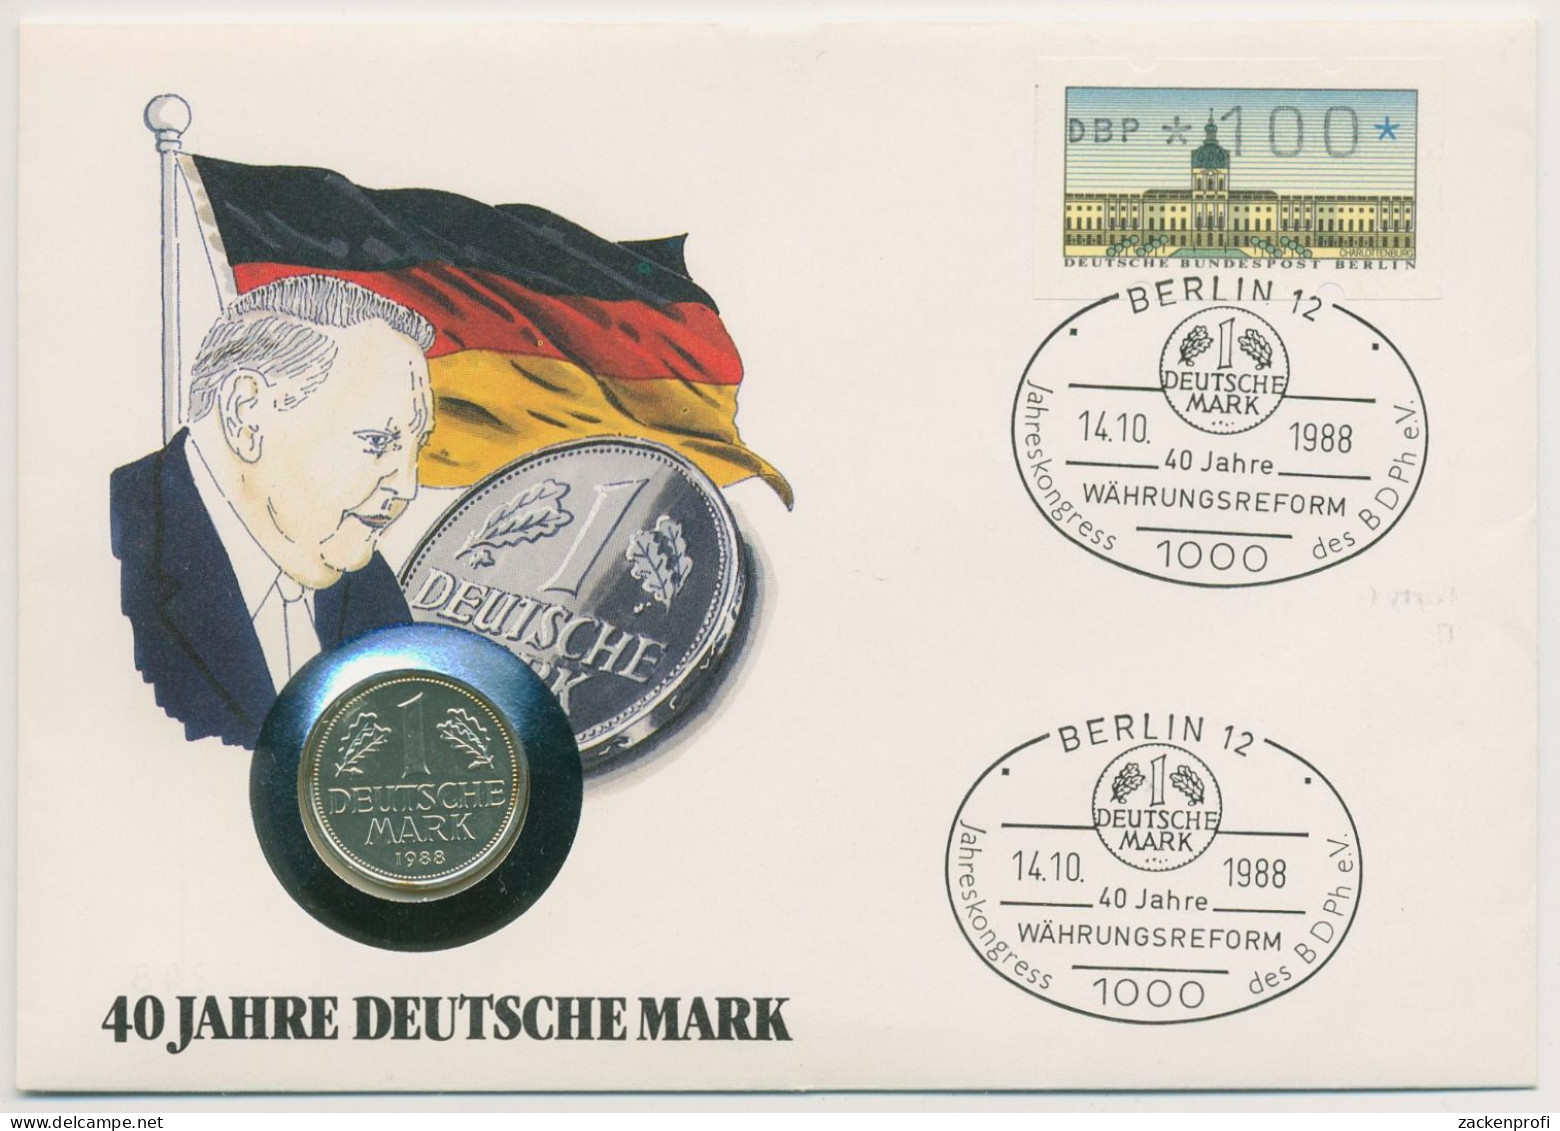 Berlin 1988 Deutsche Mark Numisbrief 1 DM Versilbert (N716) - Covers & Documents